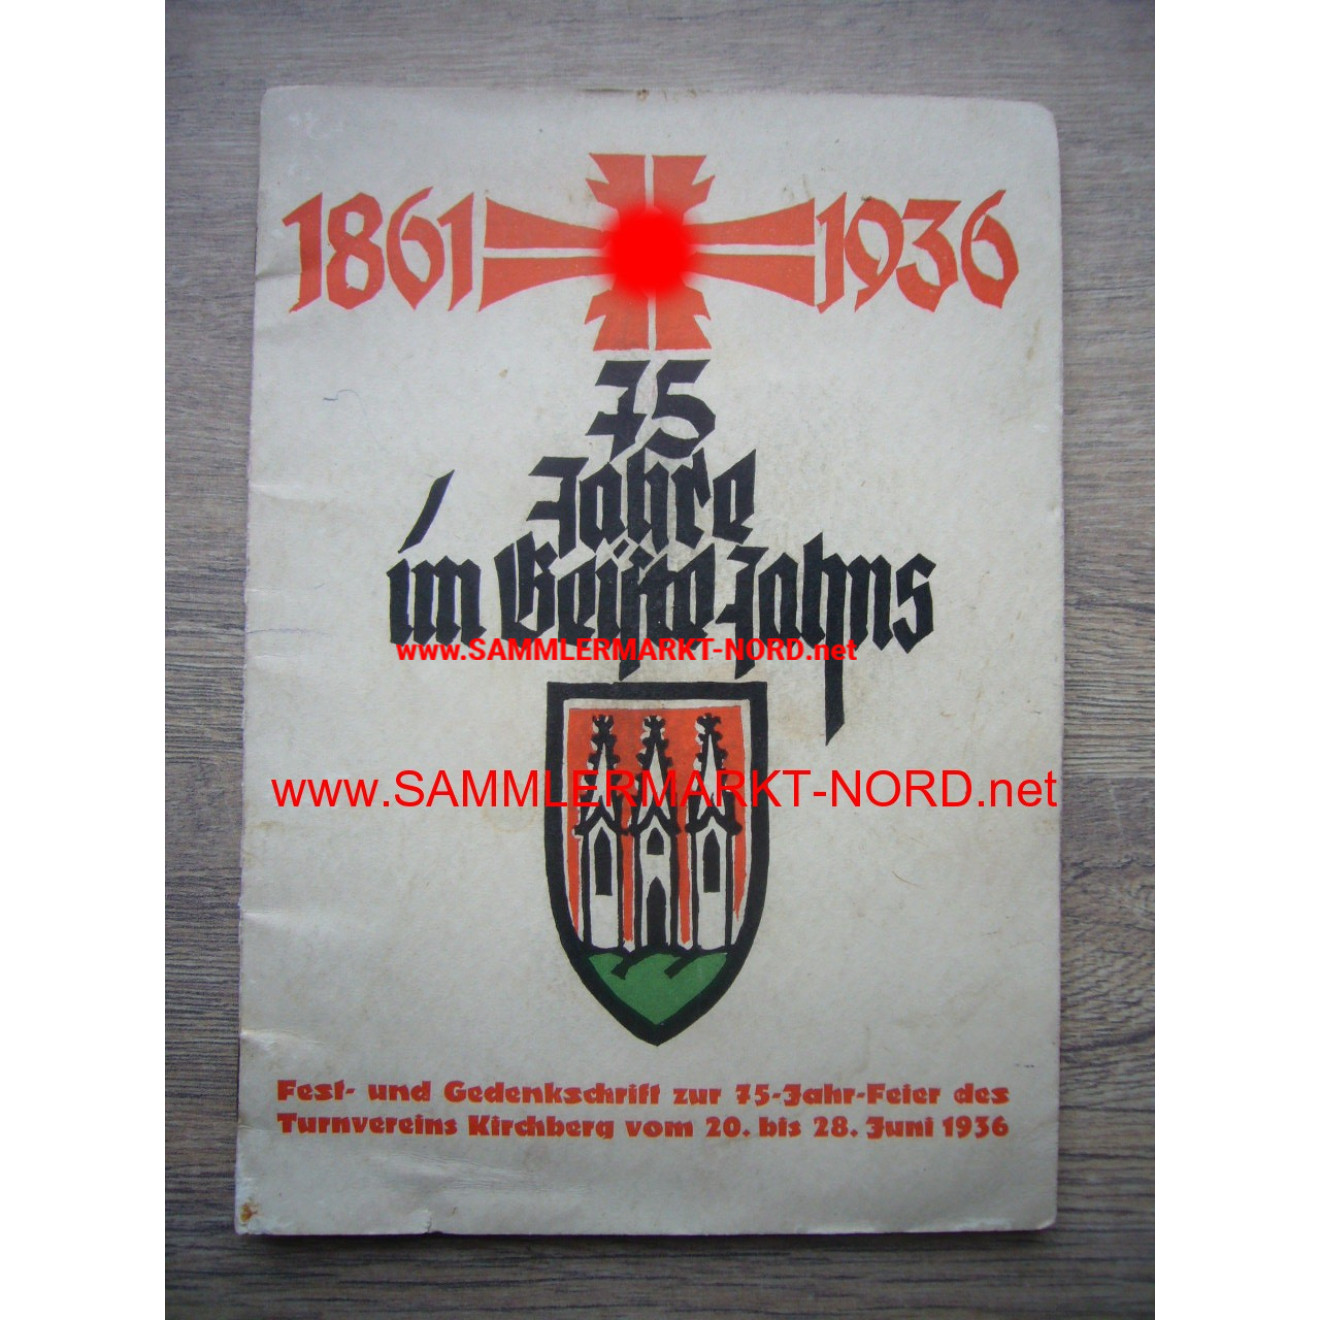 75 Jahre im Geiste Jahns 1861 - 1936